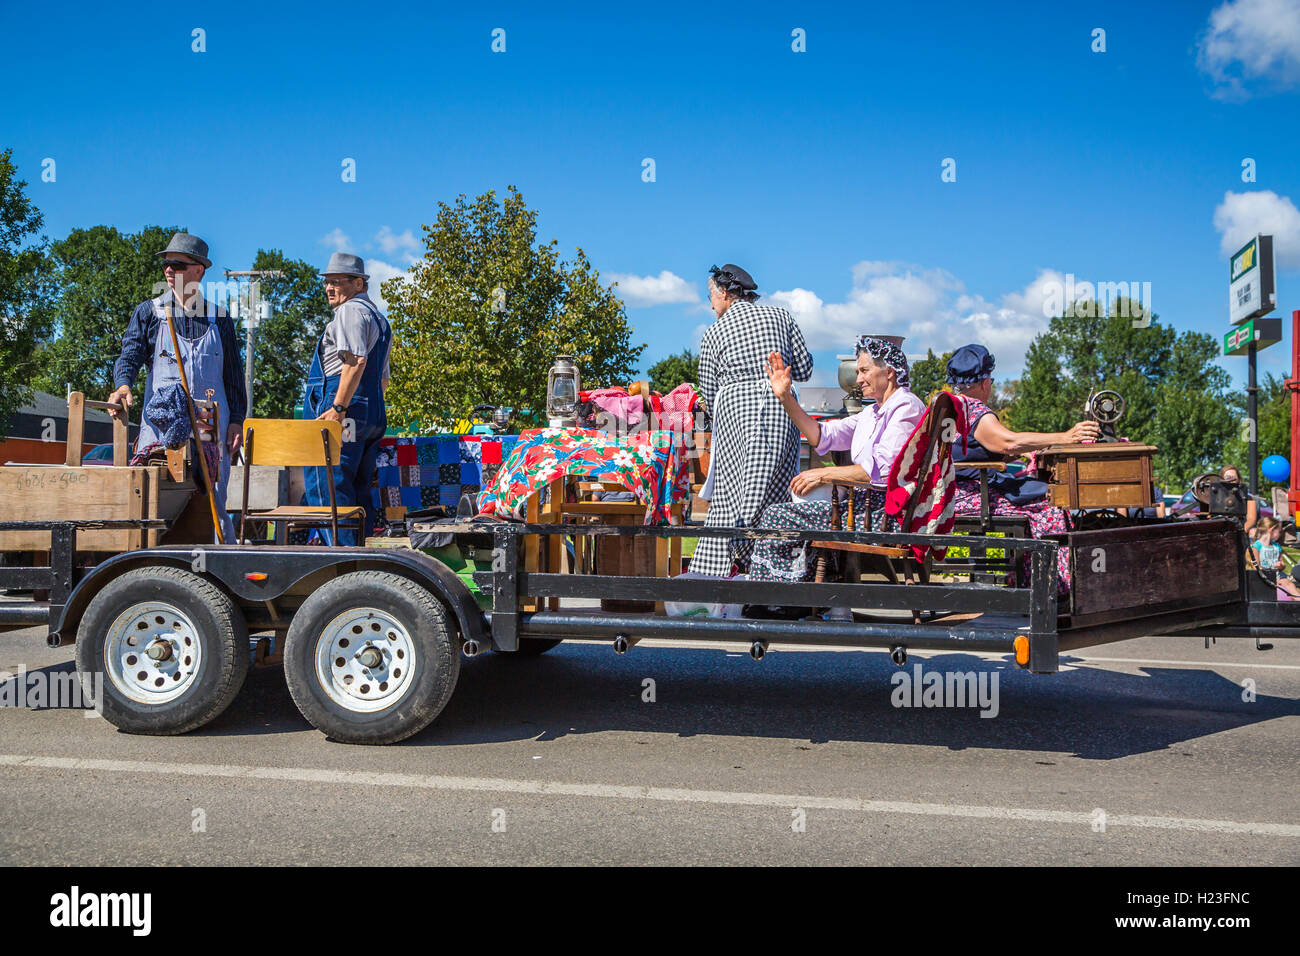 The Harvest festival 2016 street parade in Winkler, Manitoba, Canada. Stock Photo